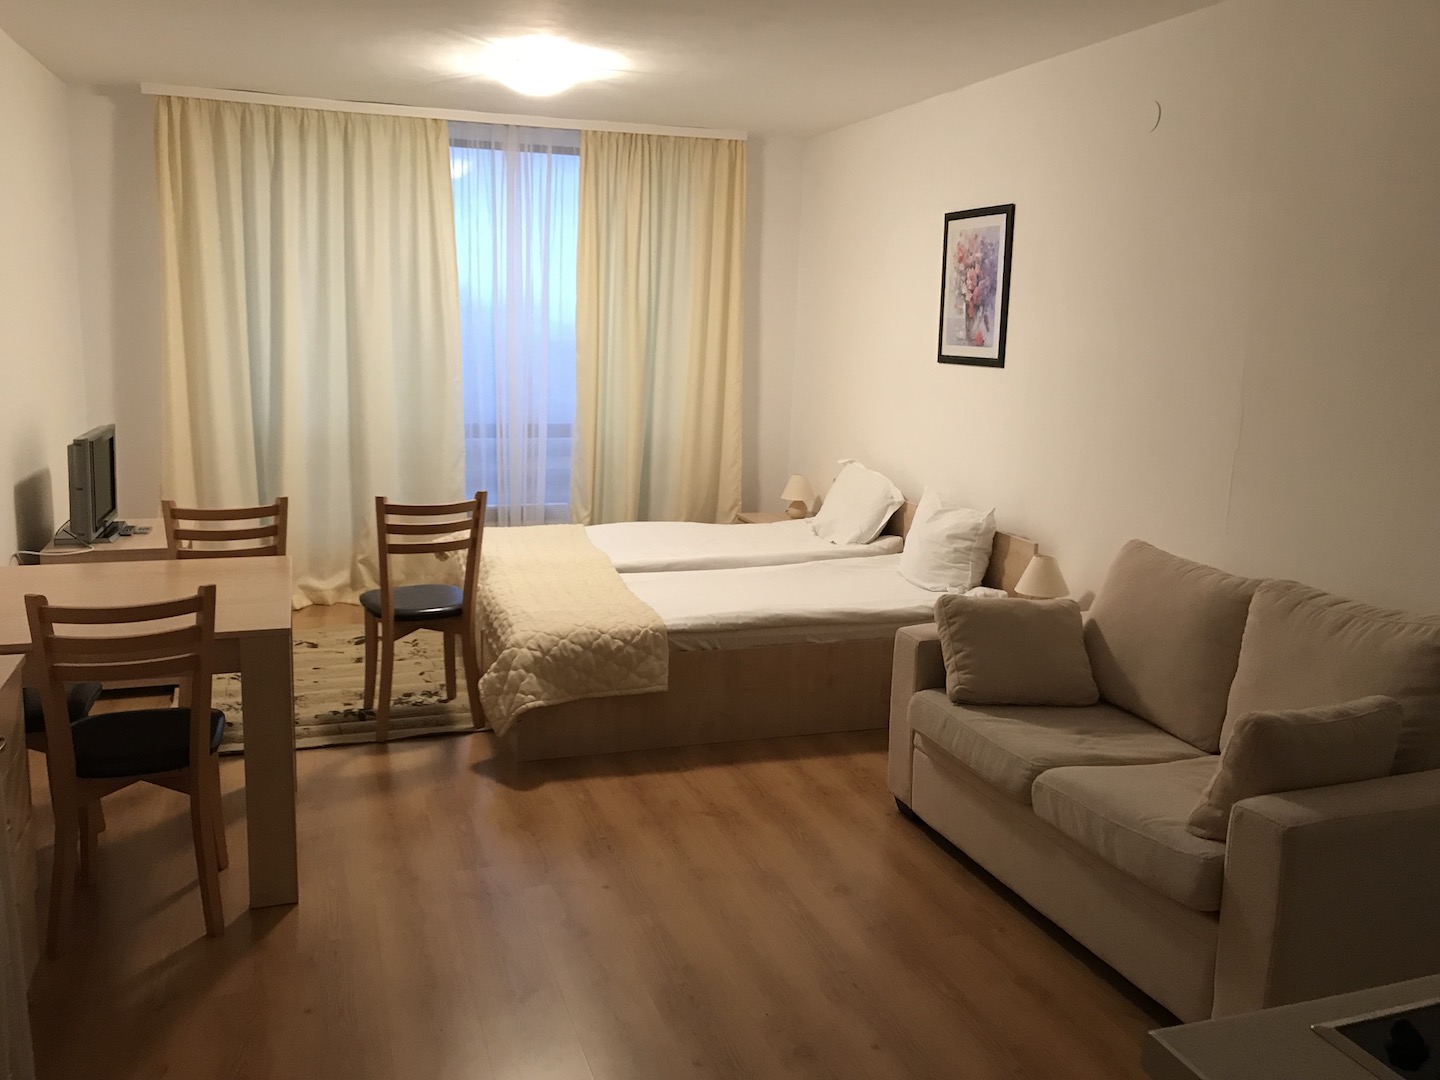 44,29sq.m studio apartment for sale in Bulgaria